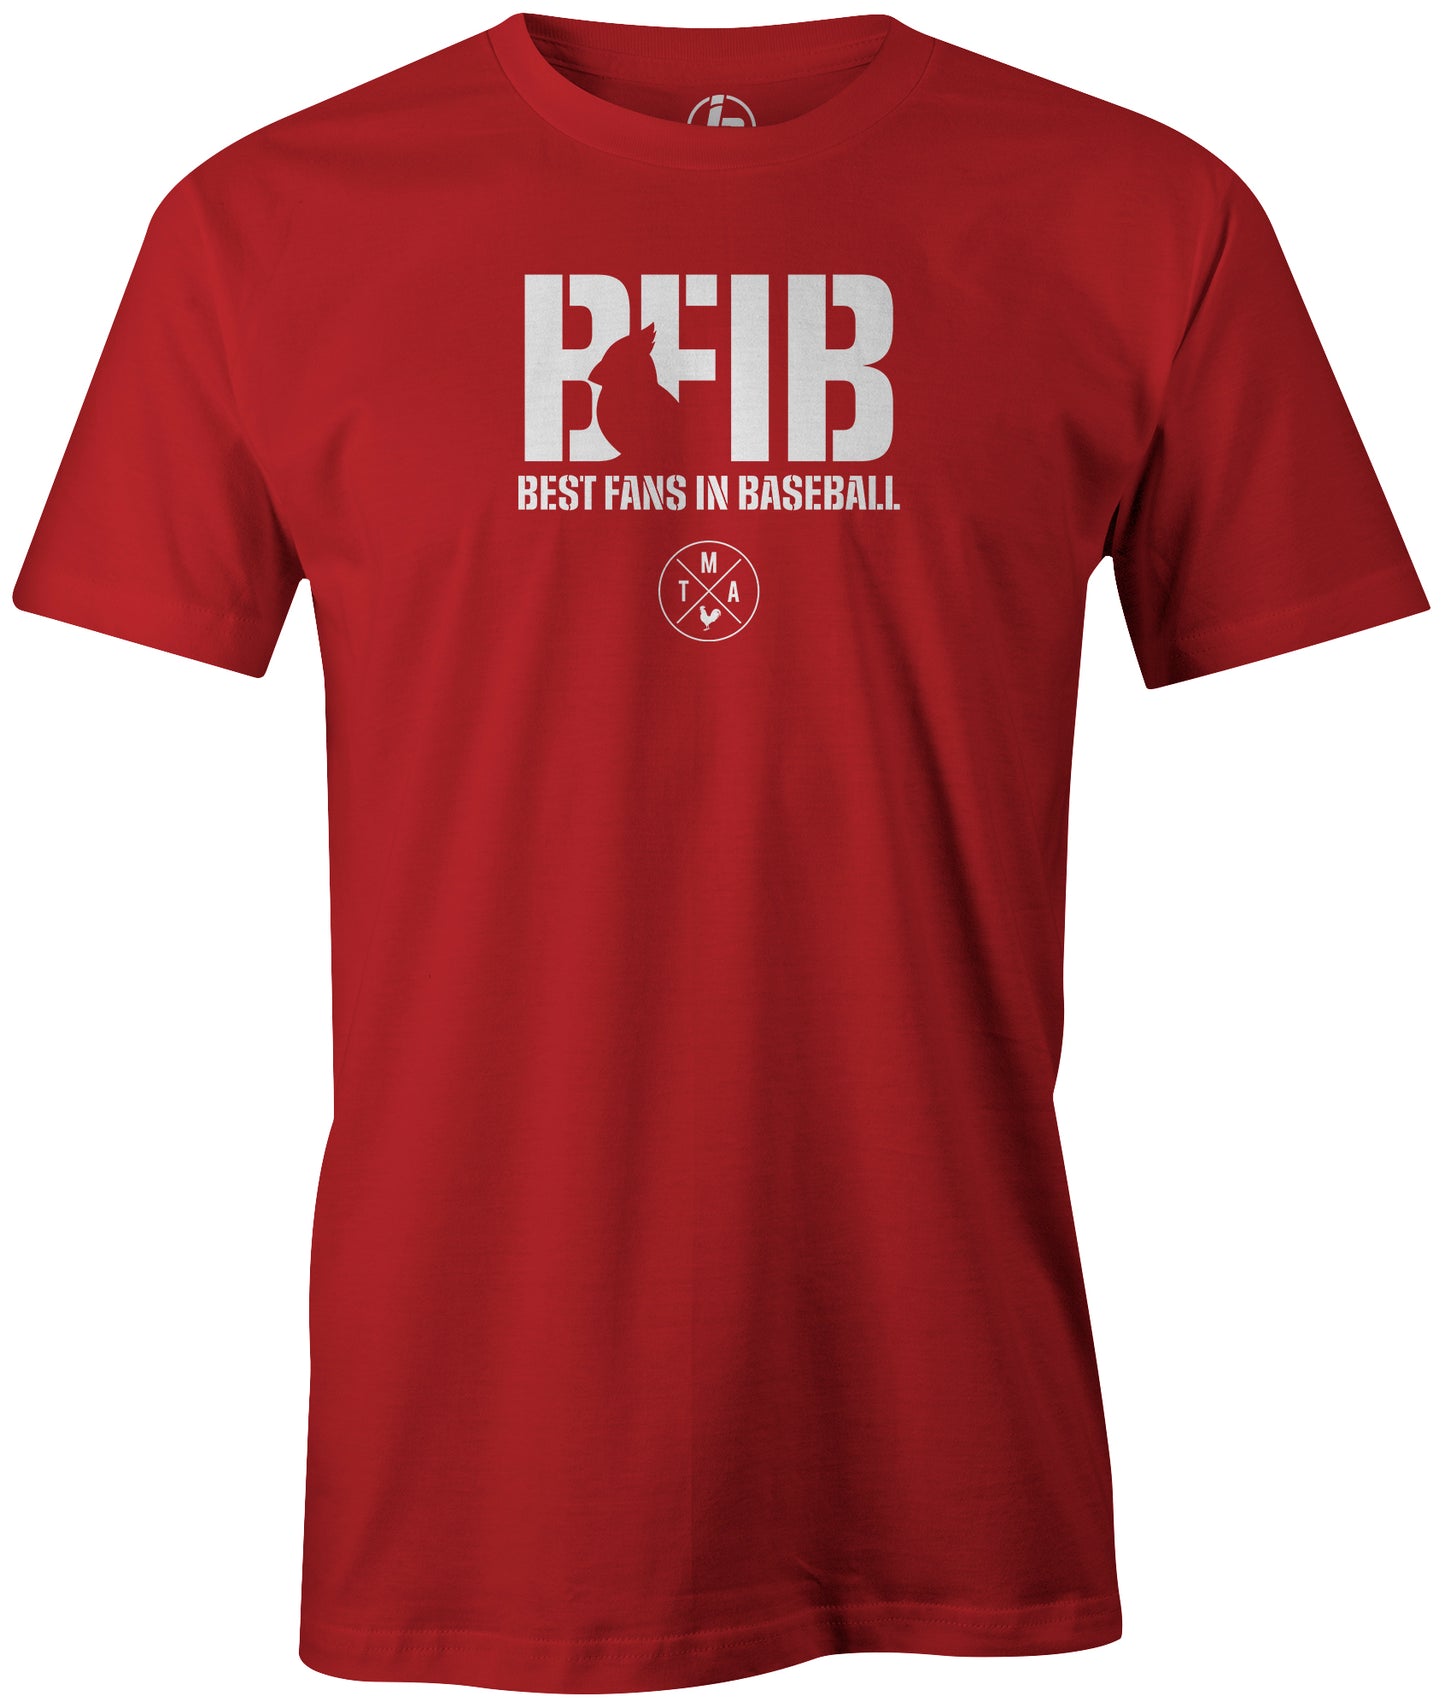 BFIB - Best Fans In Baseball